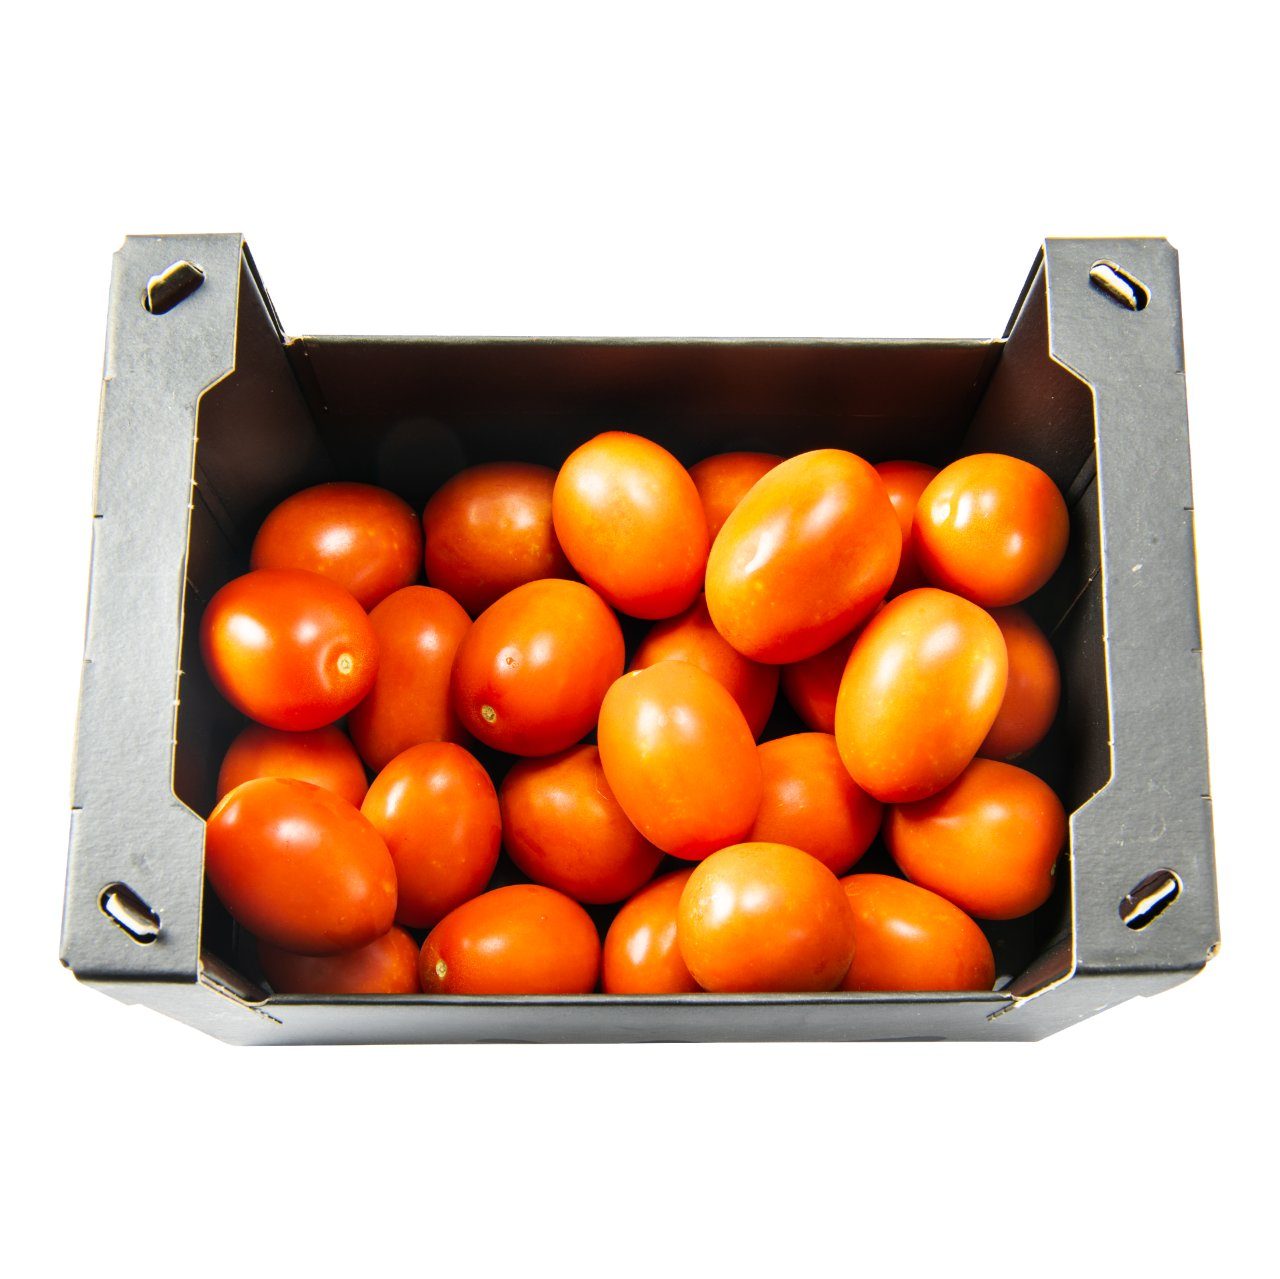 Kneden ik ben slaperig De volgende Intens tomaten Doos 2 kilo | dekweker.nl